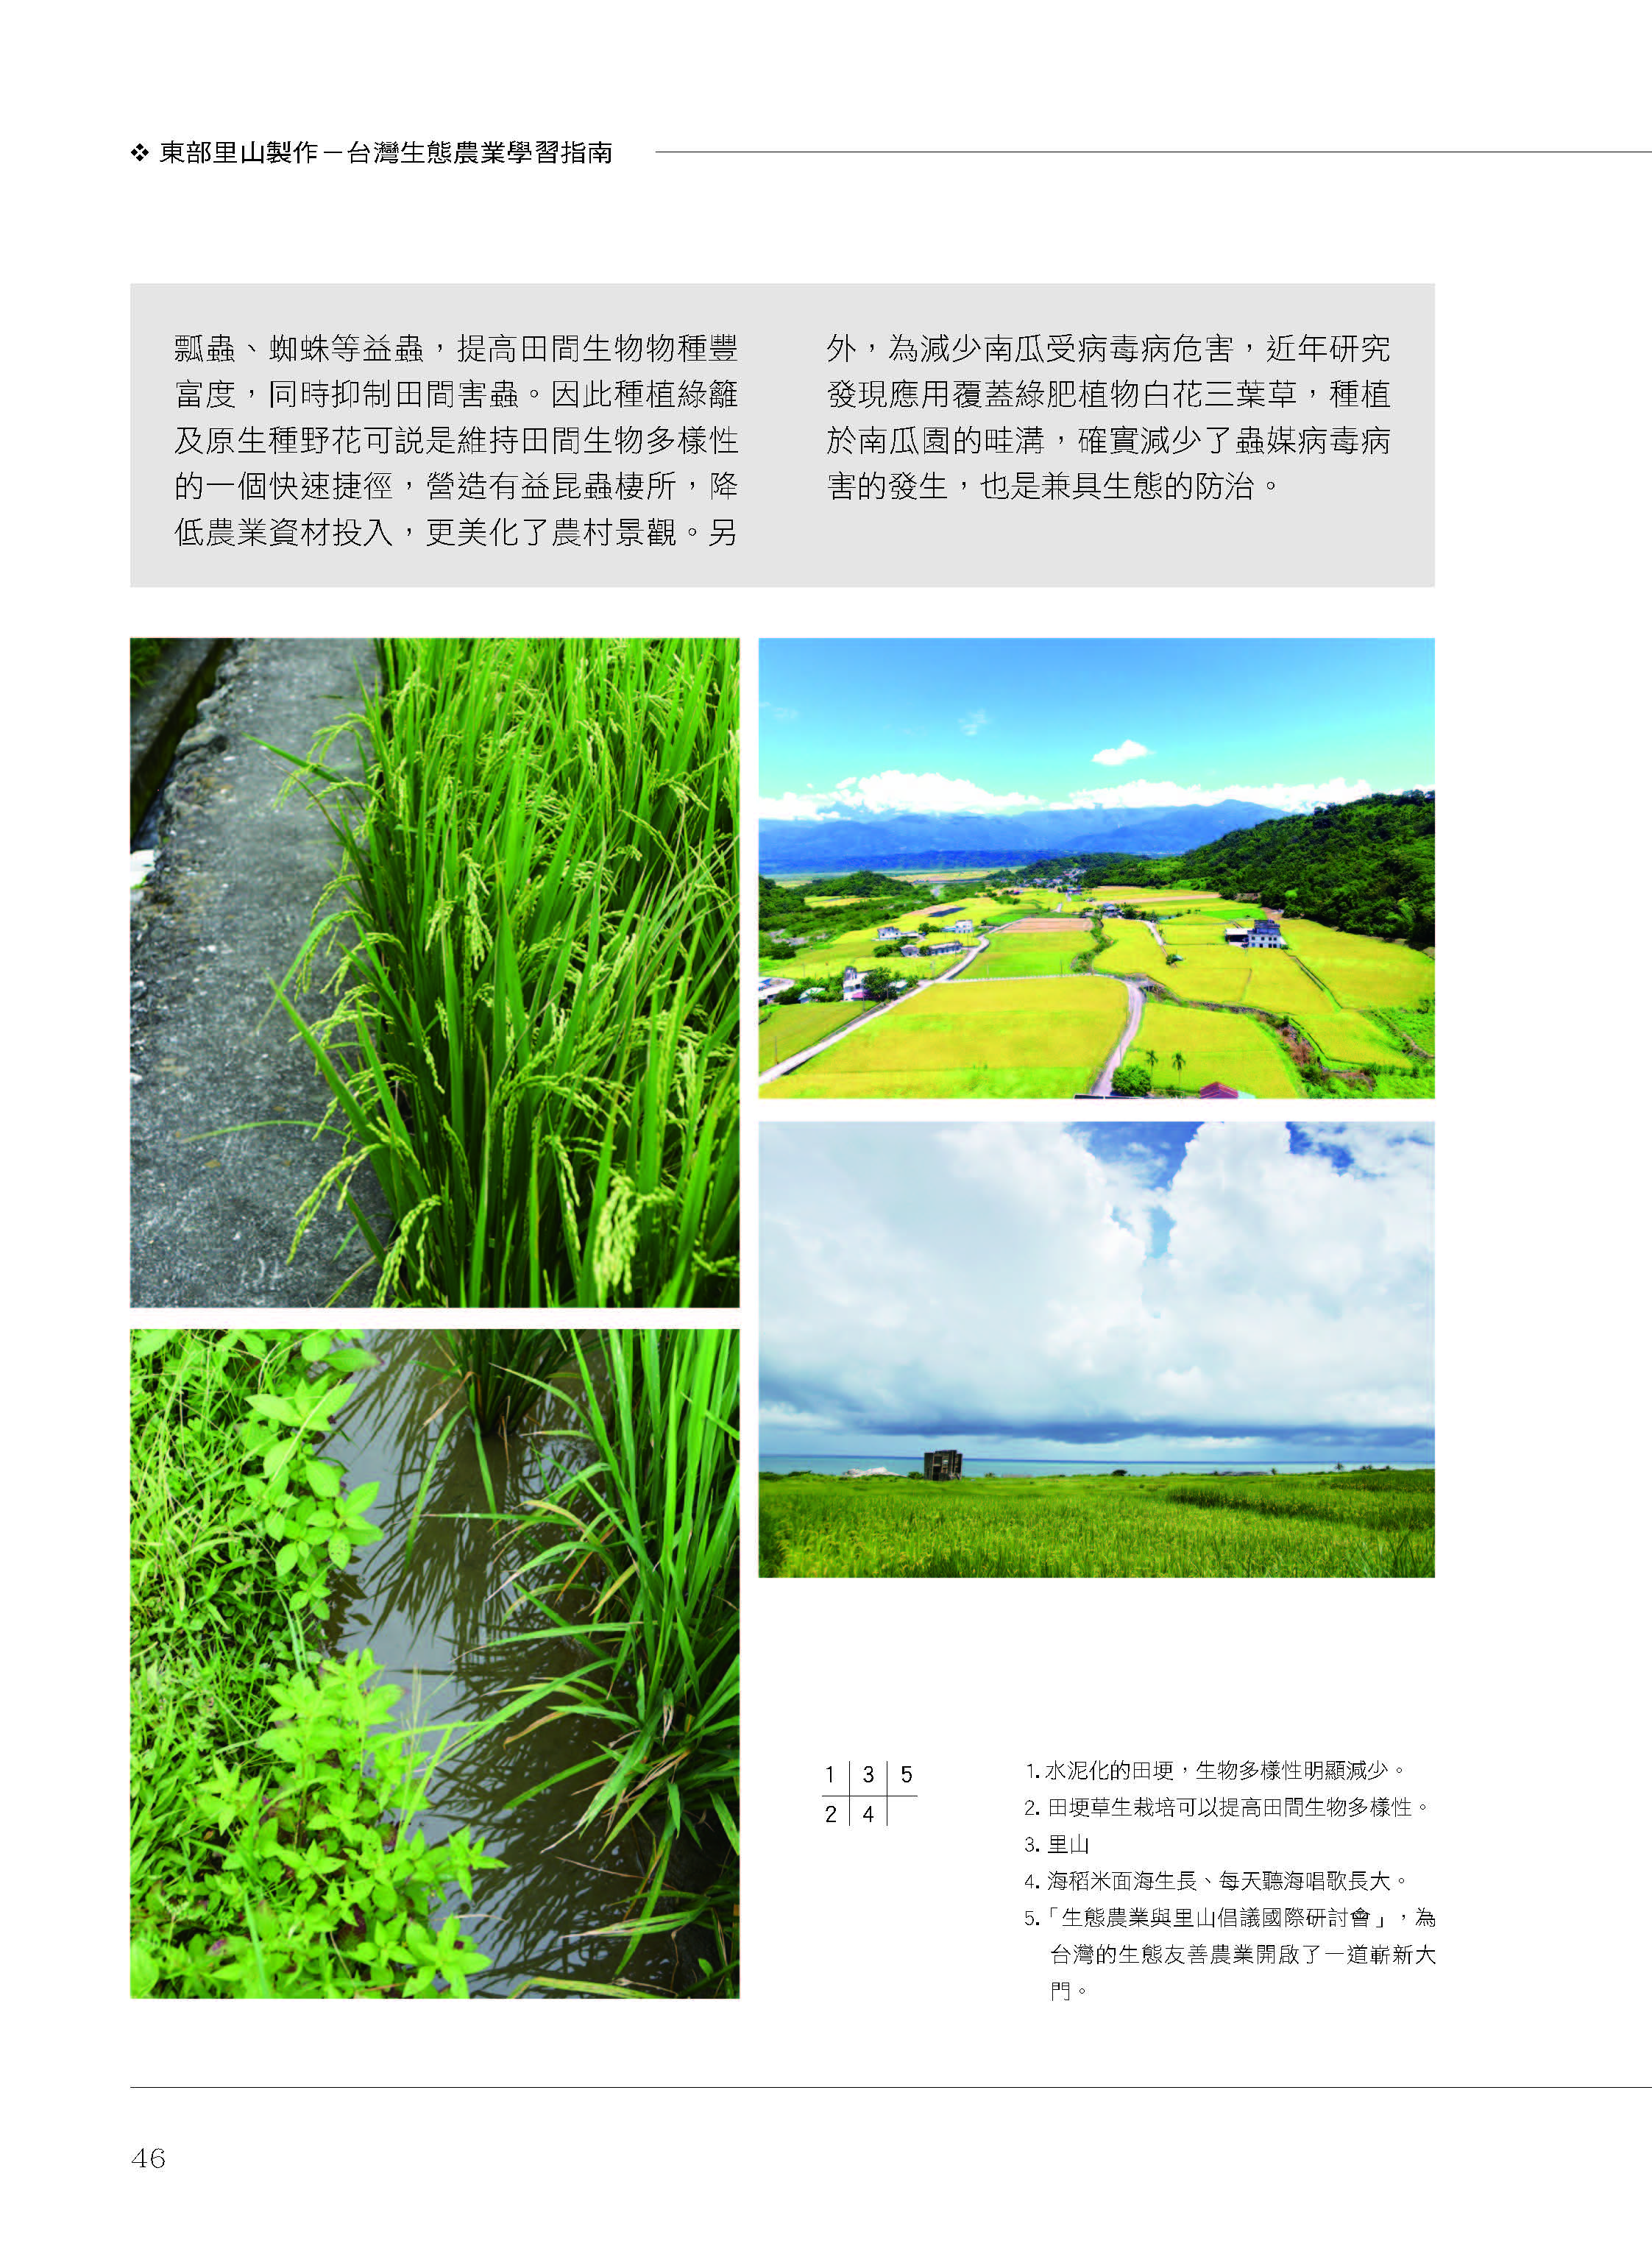 里山台灣－專欄4－研究與現場:花改場轄區內的里山案例-5